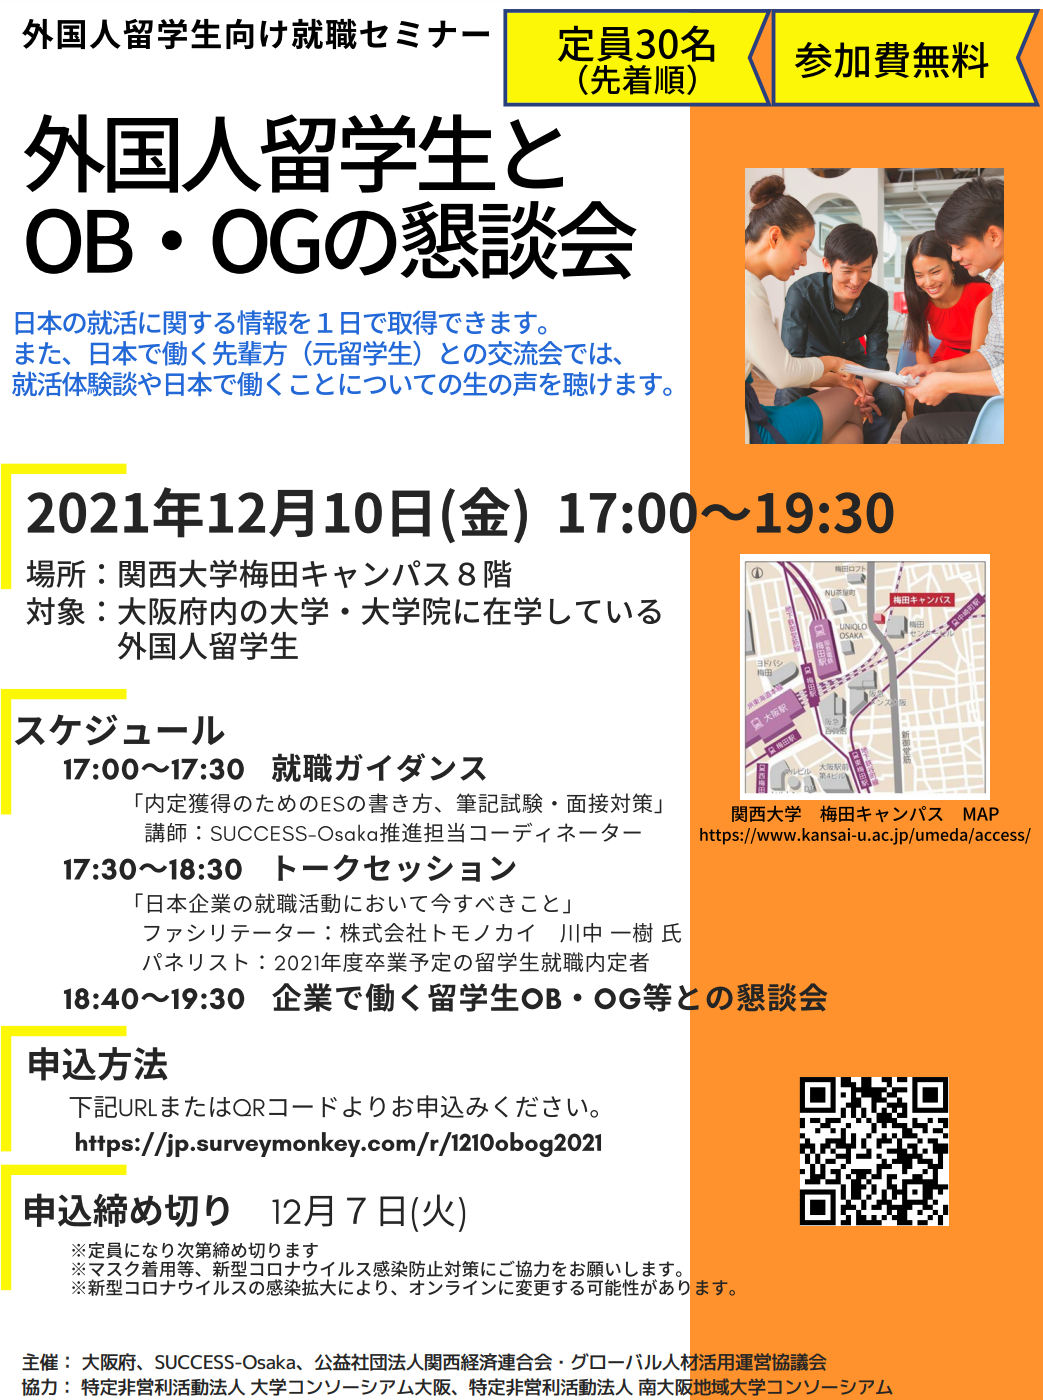 外国人留学生向け就職セミナー 「外国人留学生とOB・OGの懇談会」